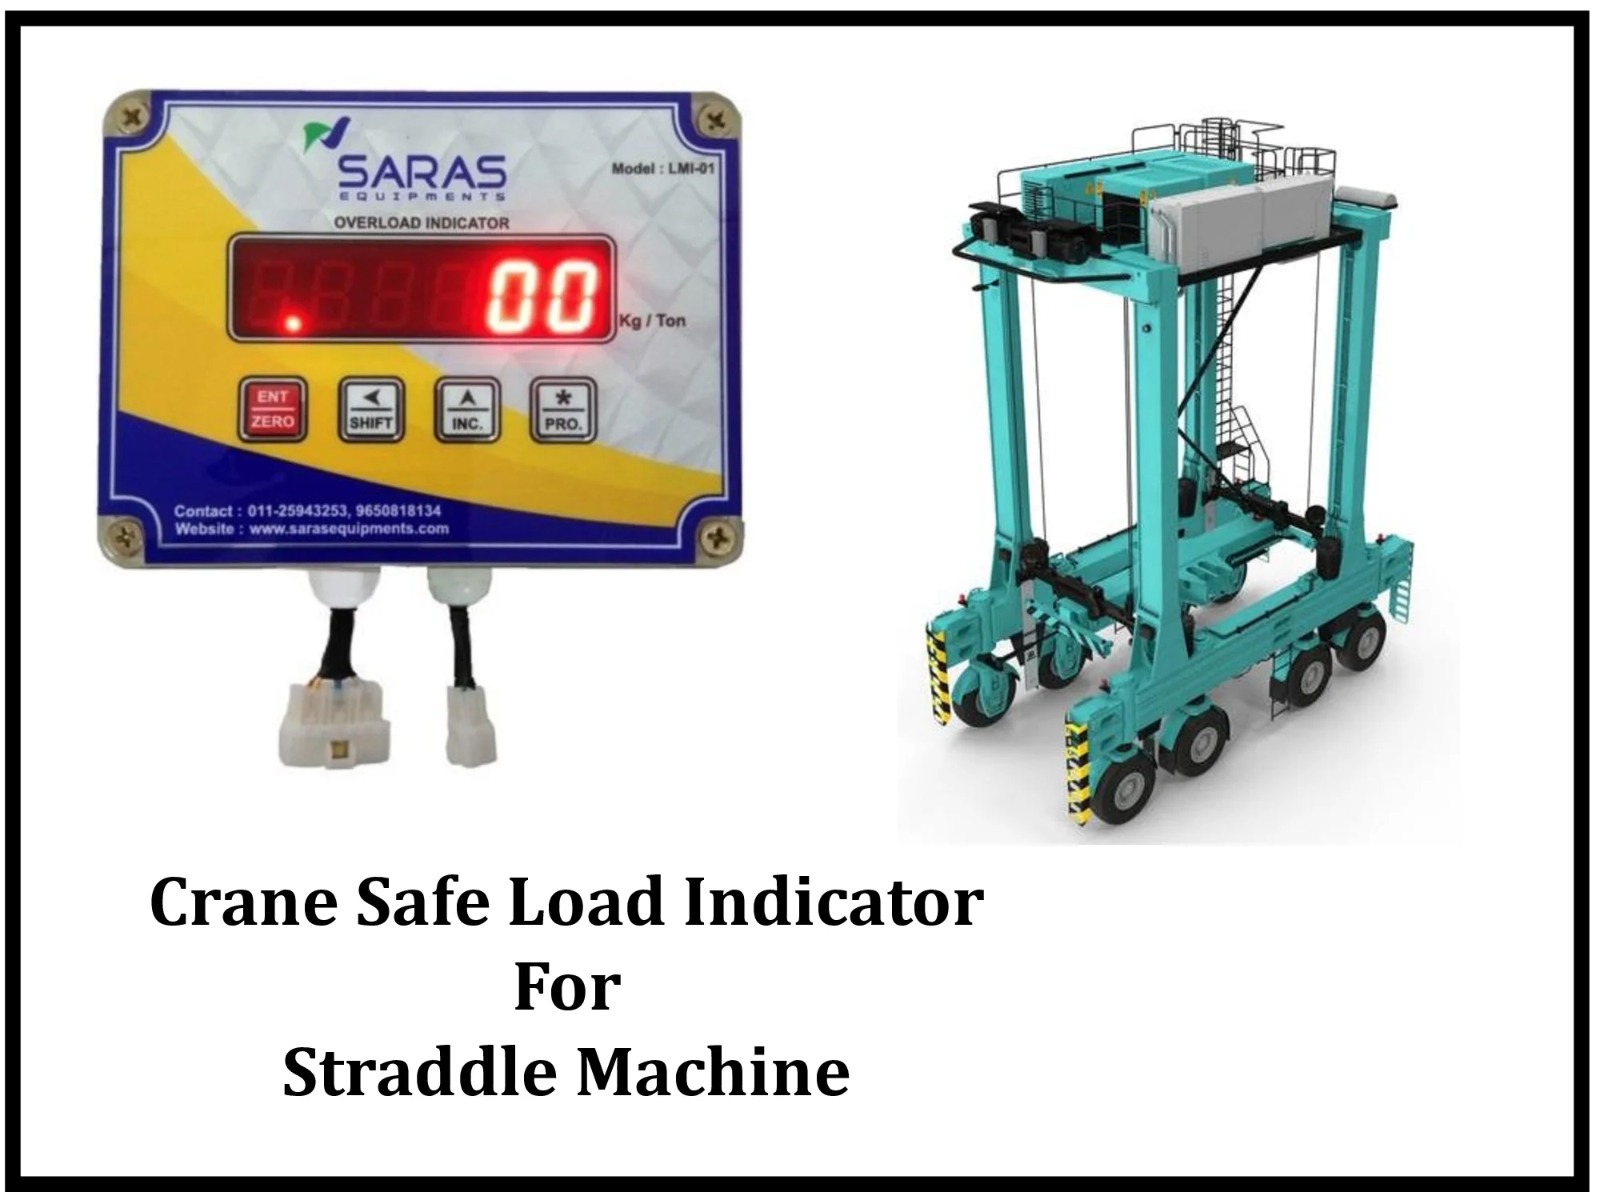 Crane Safe Load Indicator for Straddle Crane